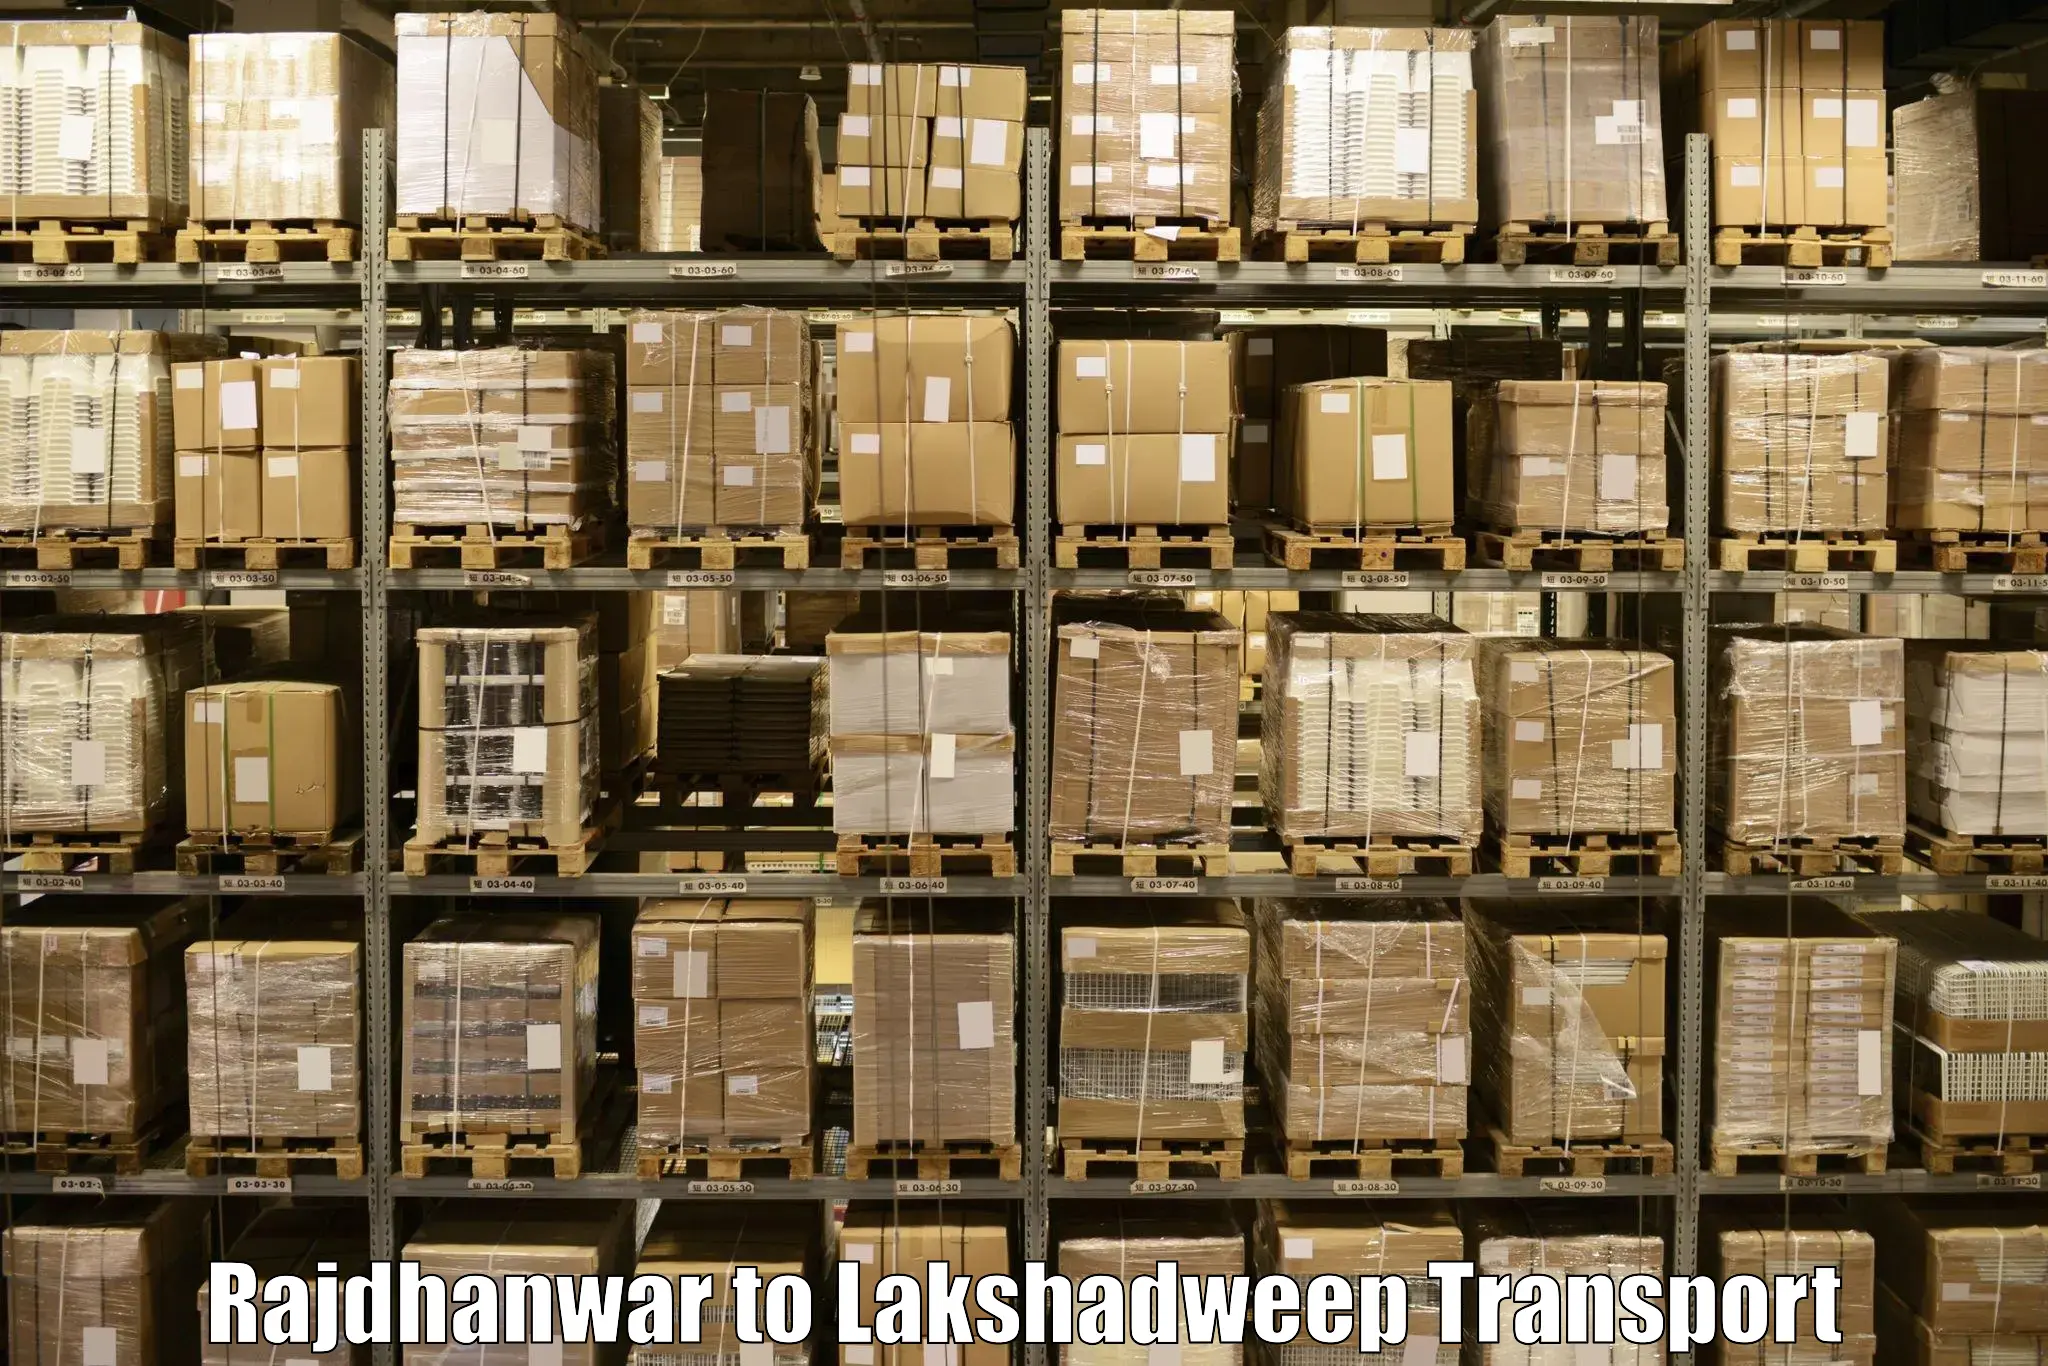 Package delivery services Rajdhanwar to Lakshadweep